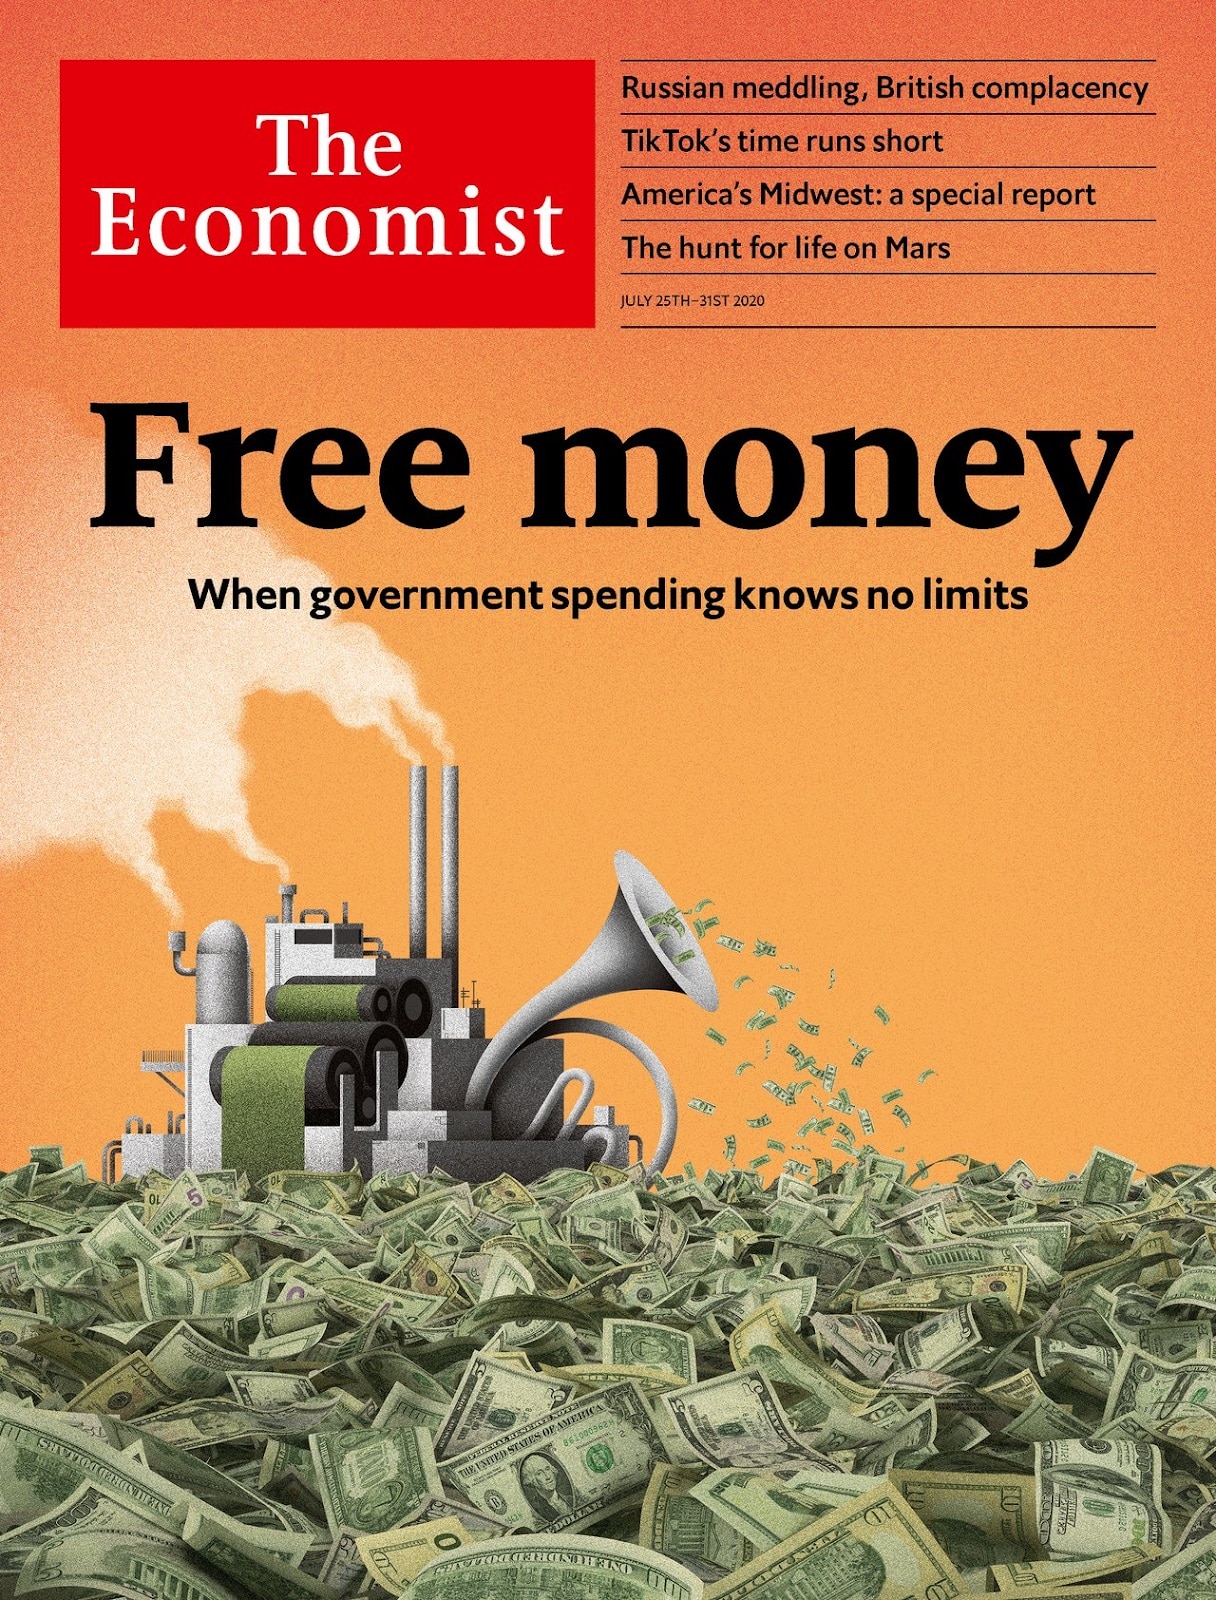 Lee más sobre el artículo The Economist Free Money La Fed El Regulador Bancario Americano Washington D.C. todos aupando al Bitcoin.